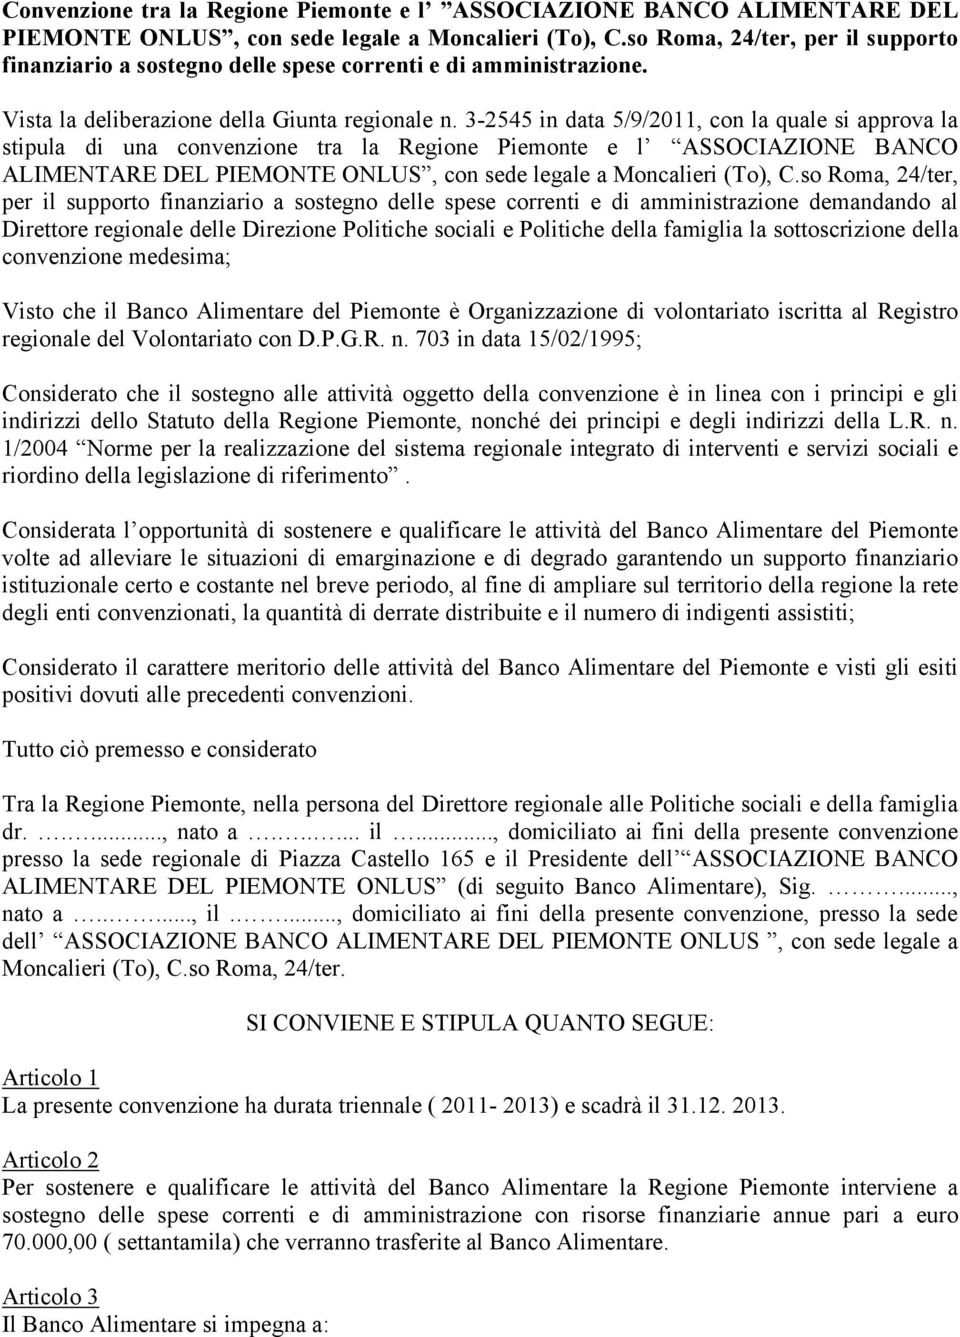 3-2545 in data 5/9/2011, con la quale si approva la stipula di una convenzione tra la Regione Piemonte e l ASSOCIAZIONE BANCO ALIMENTARE DEL PIEMONTE ONLUS, con sede legale a Moncalieri (To), C.